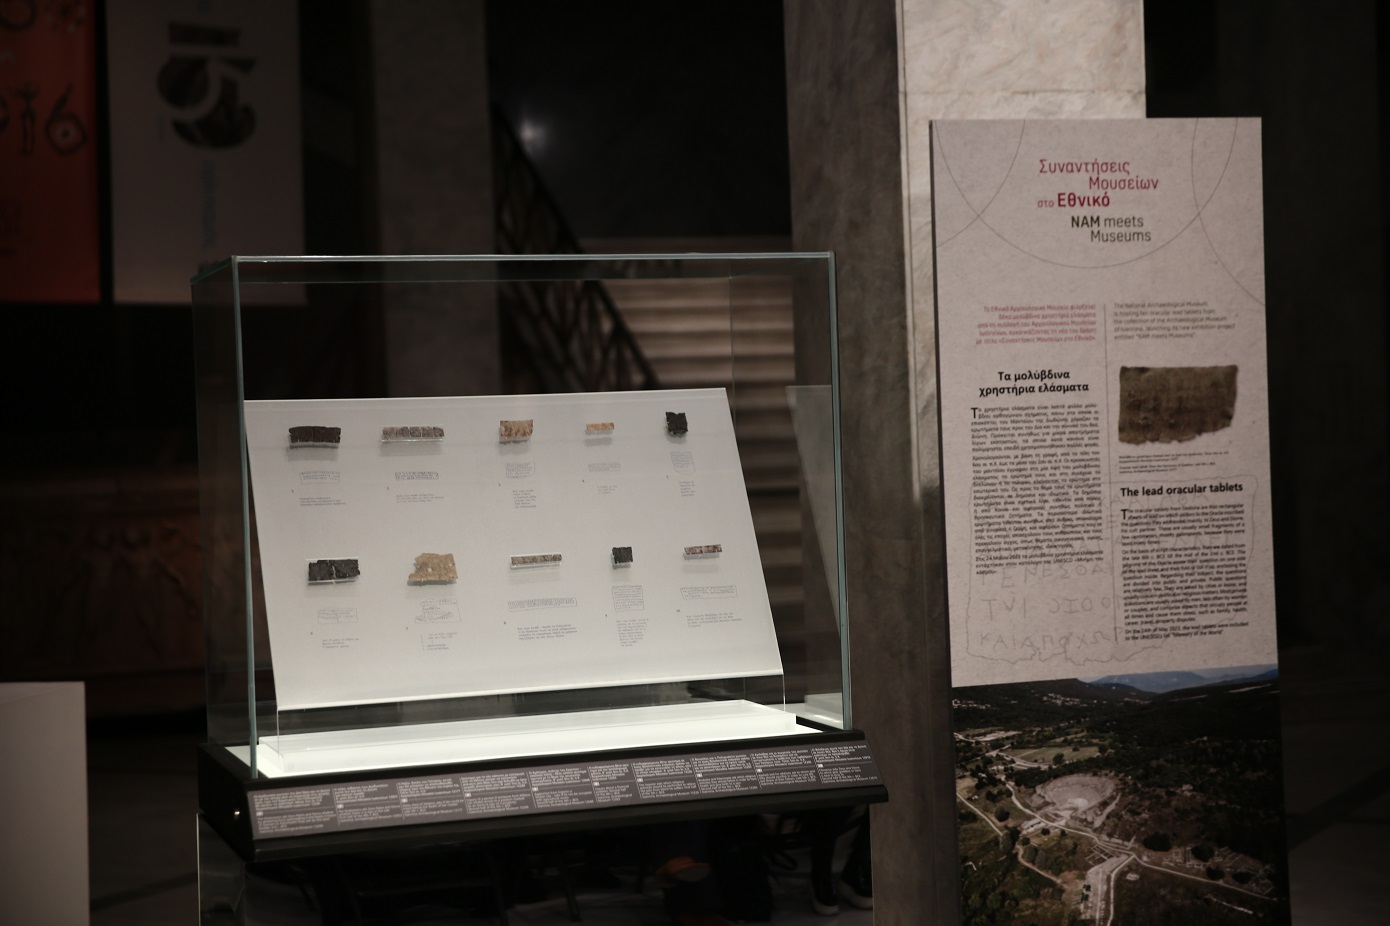 ΥΠΠΟ: Τα αρχαιολογικά μουσεία της Ηπείρου είναι τα πρώτα πιστοποιημένα κρατικά μουσεία